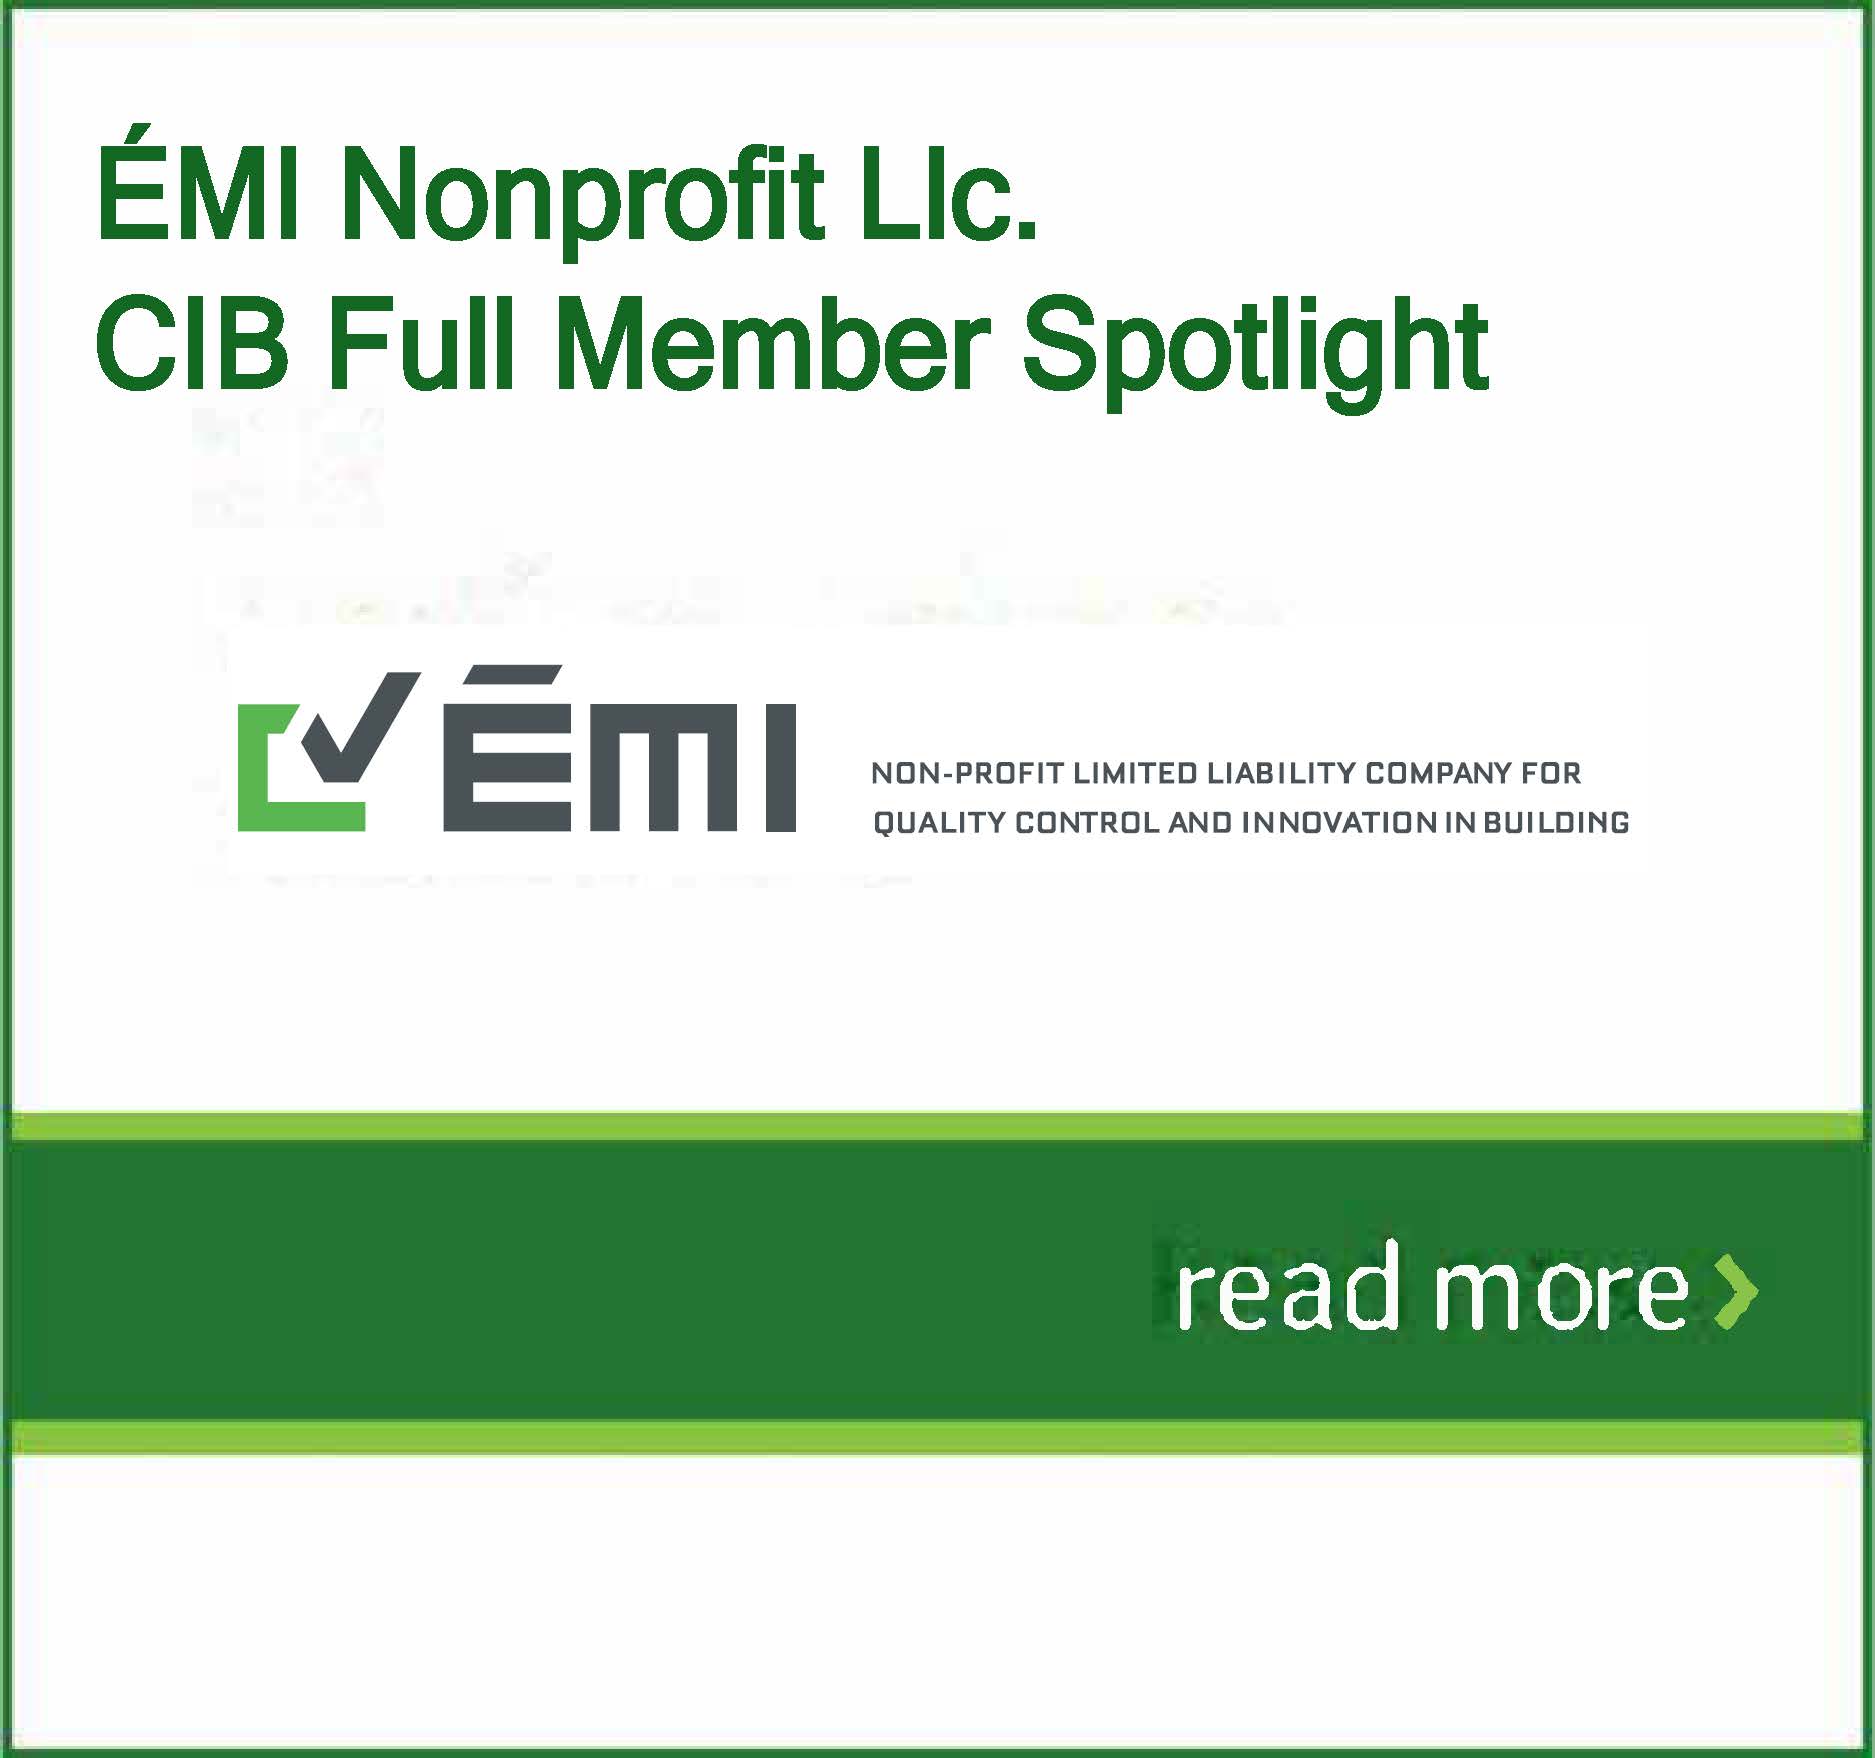 CIB Full Member Spotlight: ÉMI Nonprofit Llc.